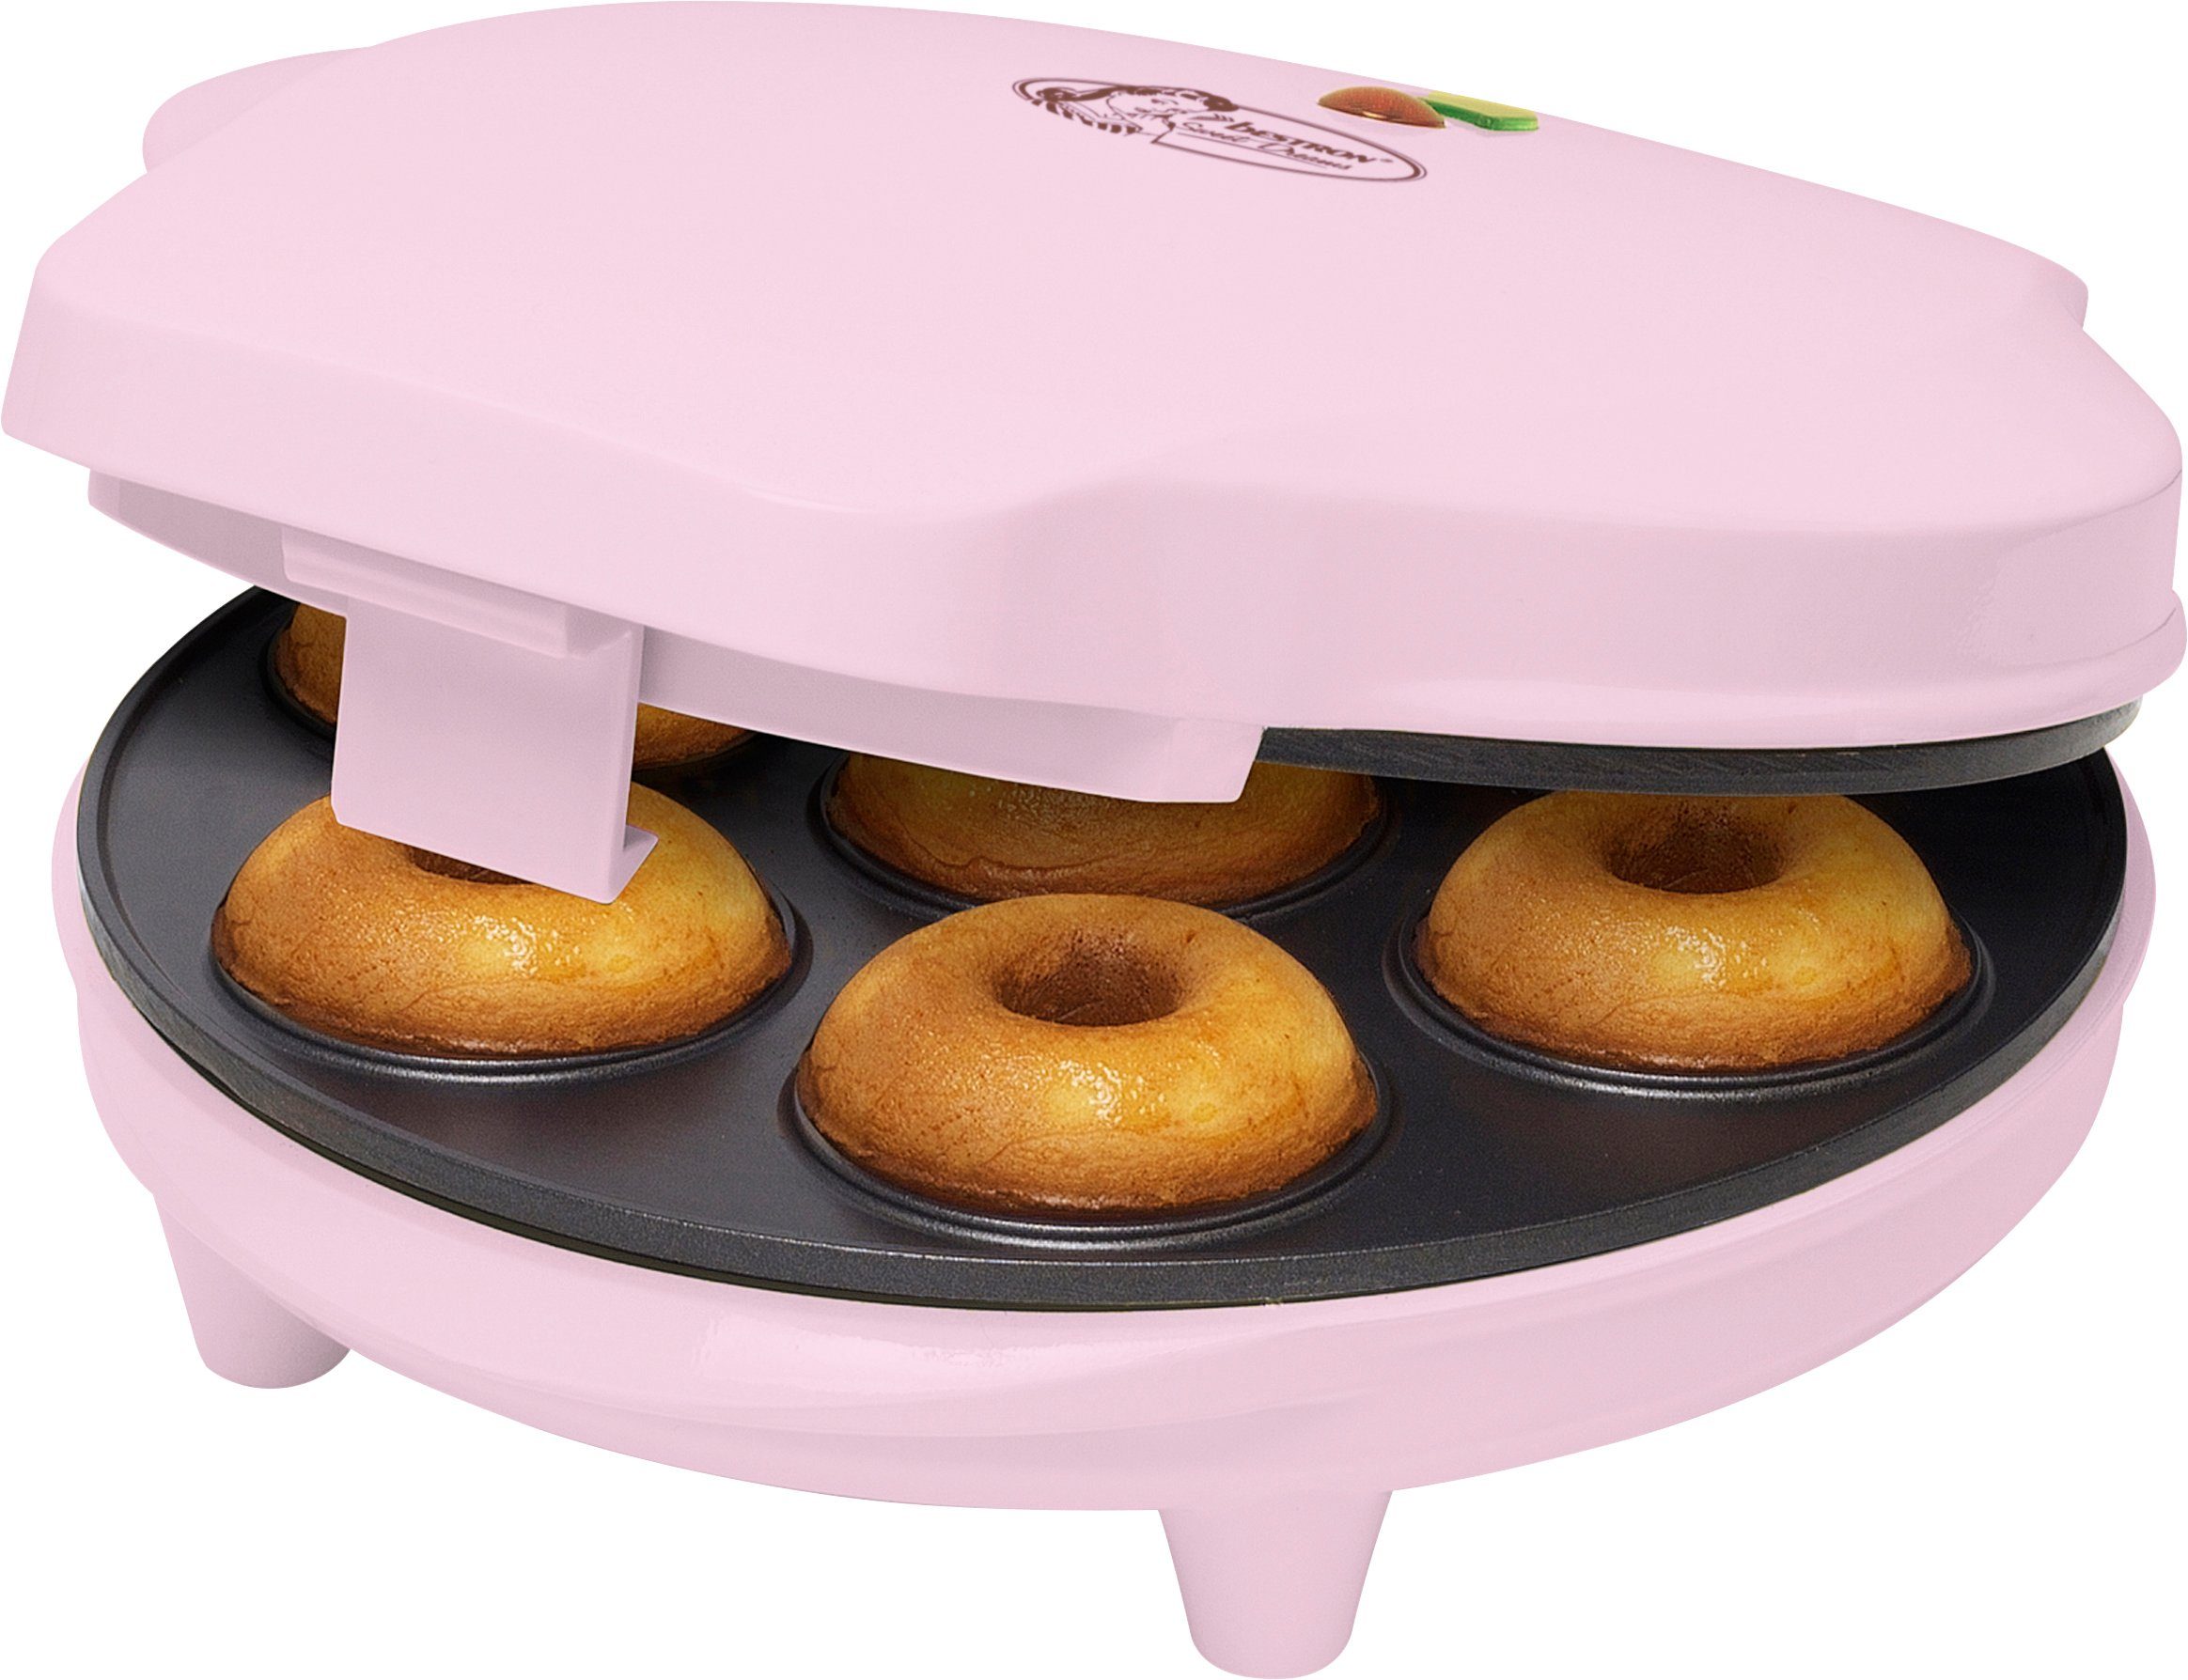 Ausgezeichnet bestron Waffeleisen Donut-Maker ADM218SDP, 700 Retro Rosa Sweet W, im Dreams, Antihaftbeschichtung, Design